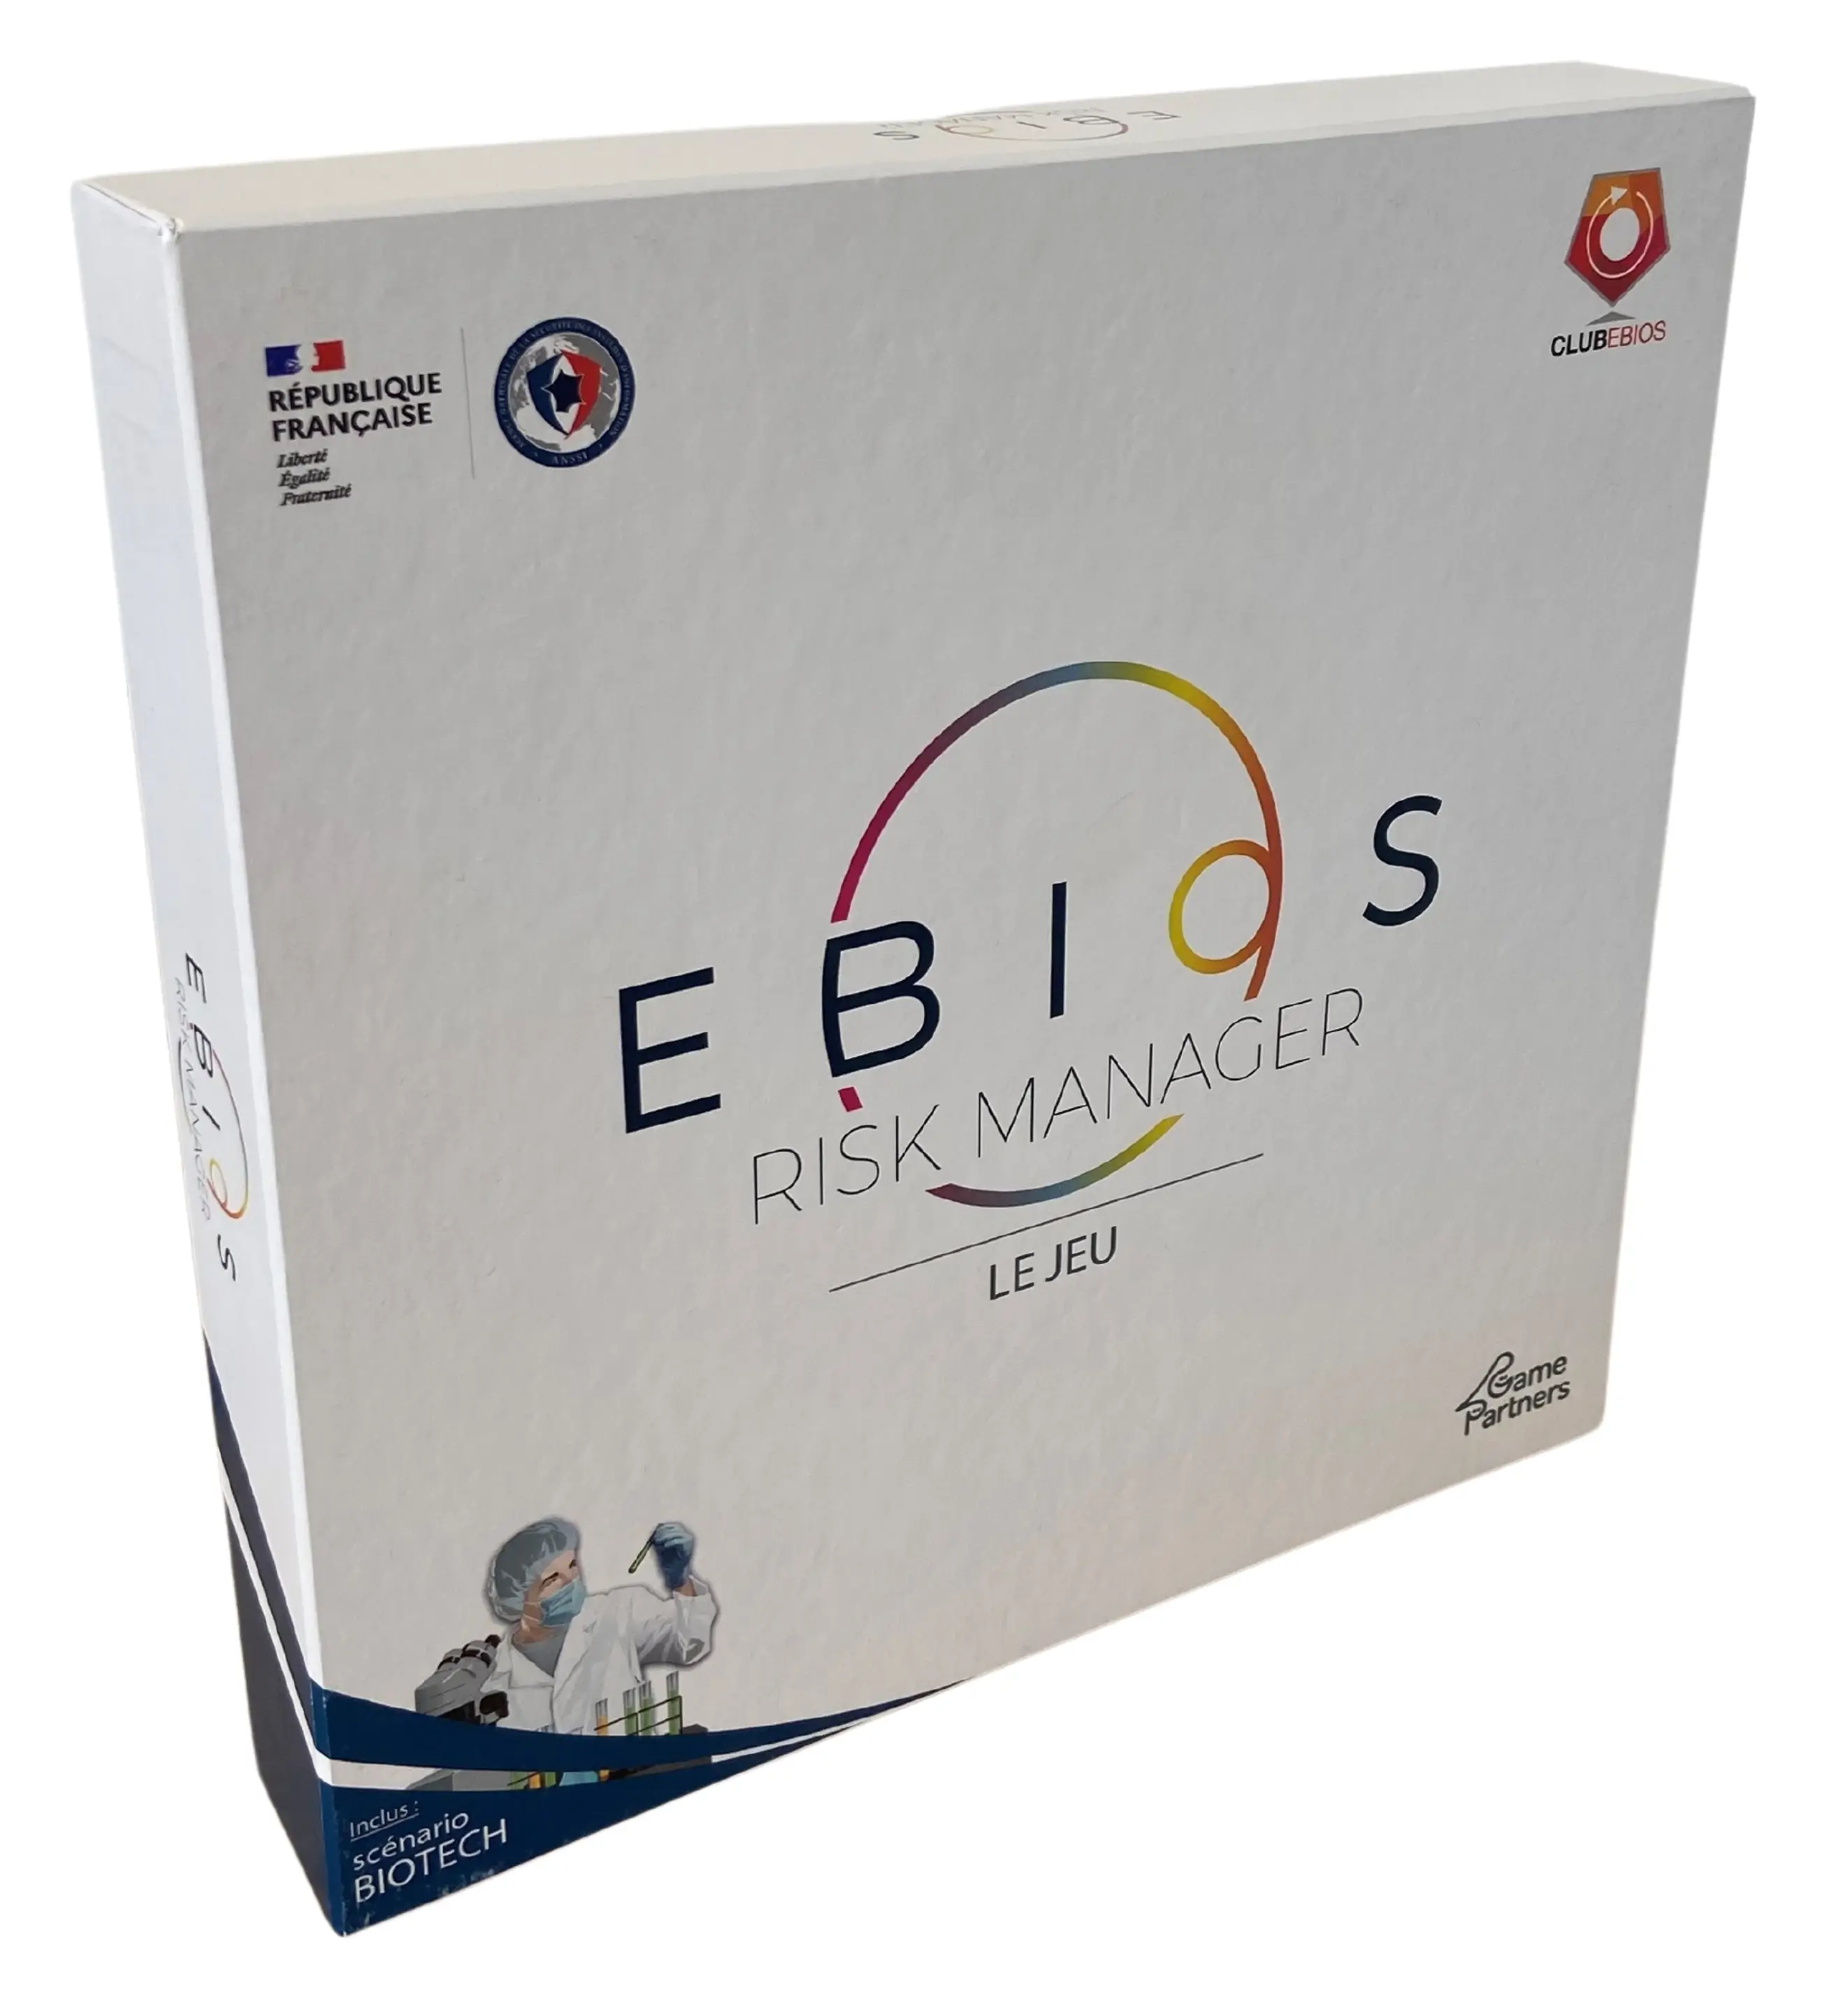 Boîte du serious game sur mesure EBIOS RM, le jeu sur l'analyse des risques cyber